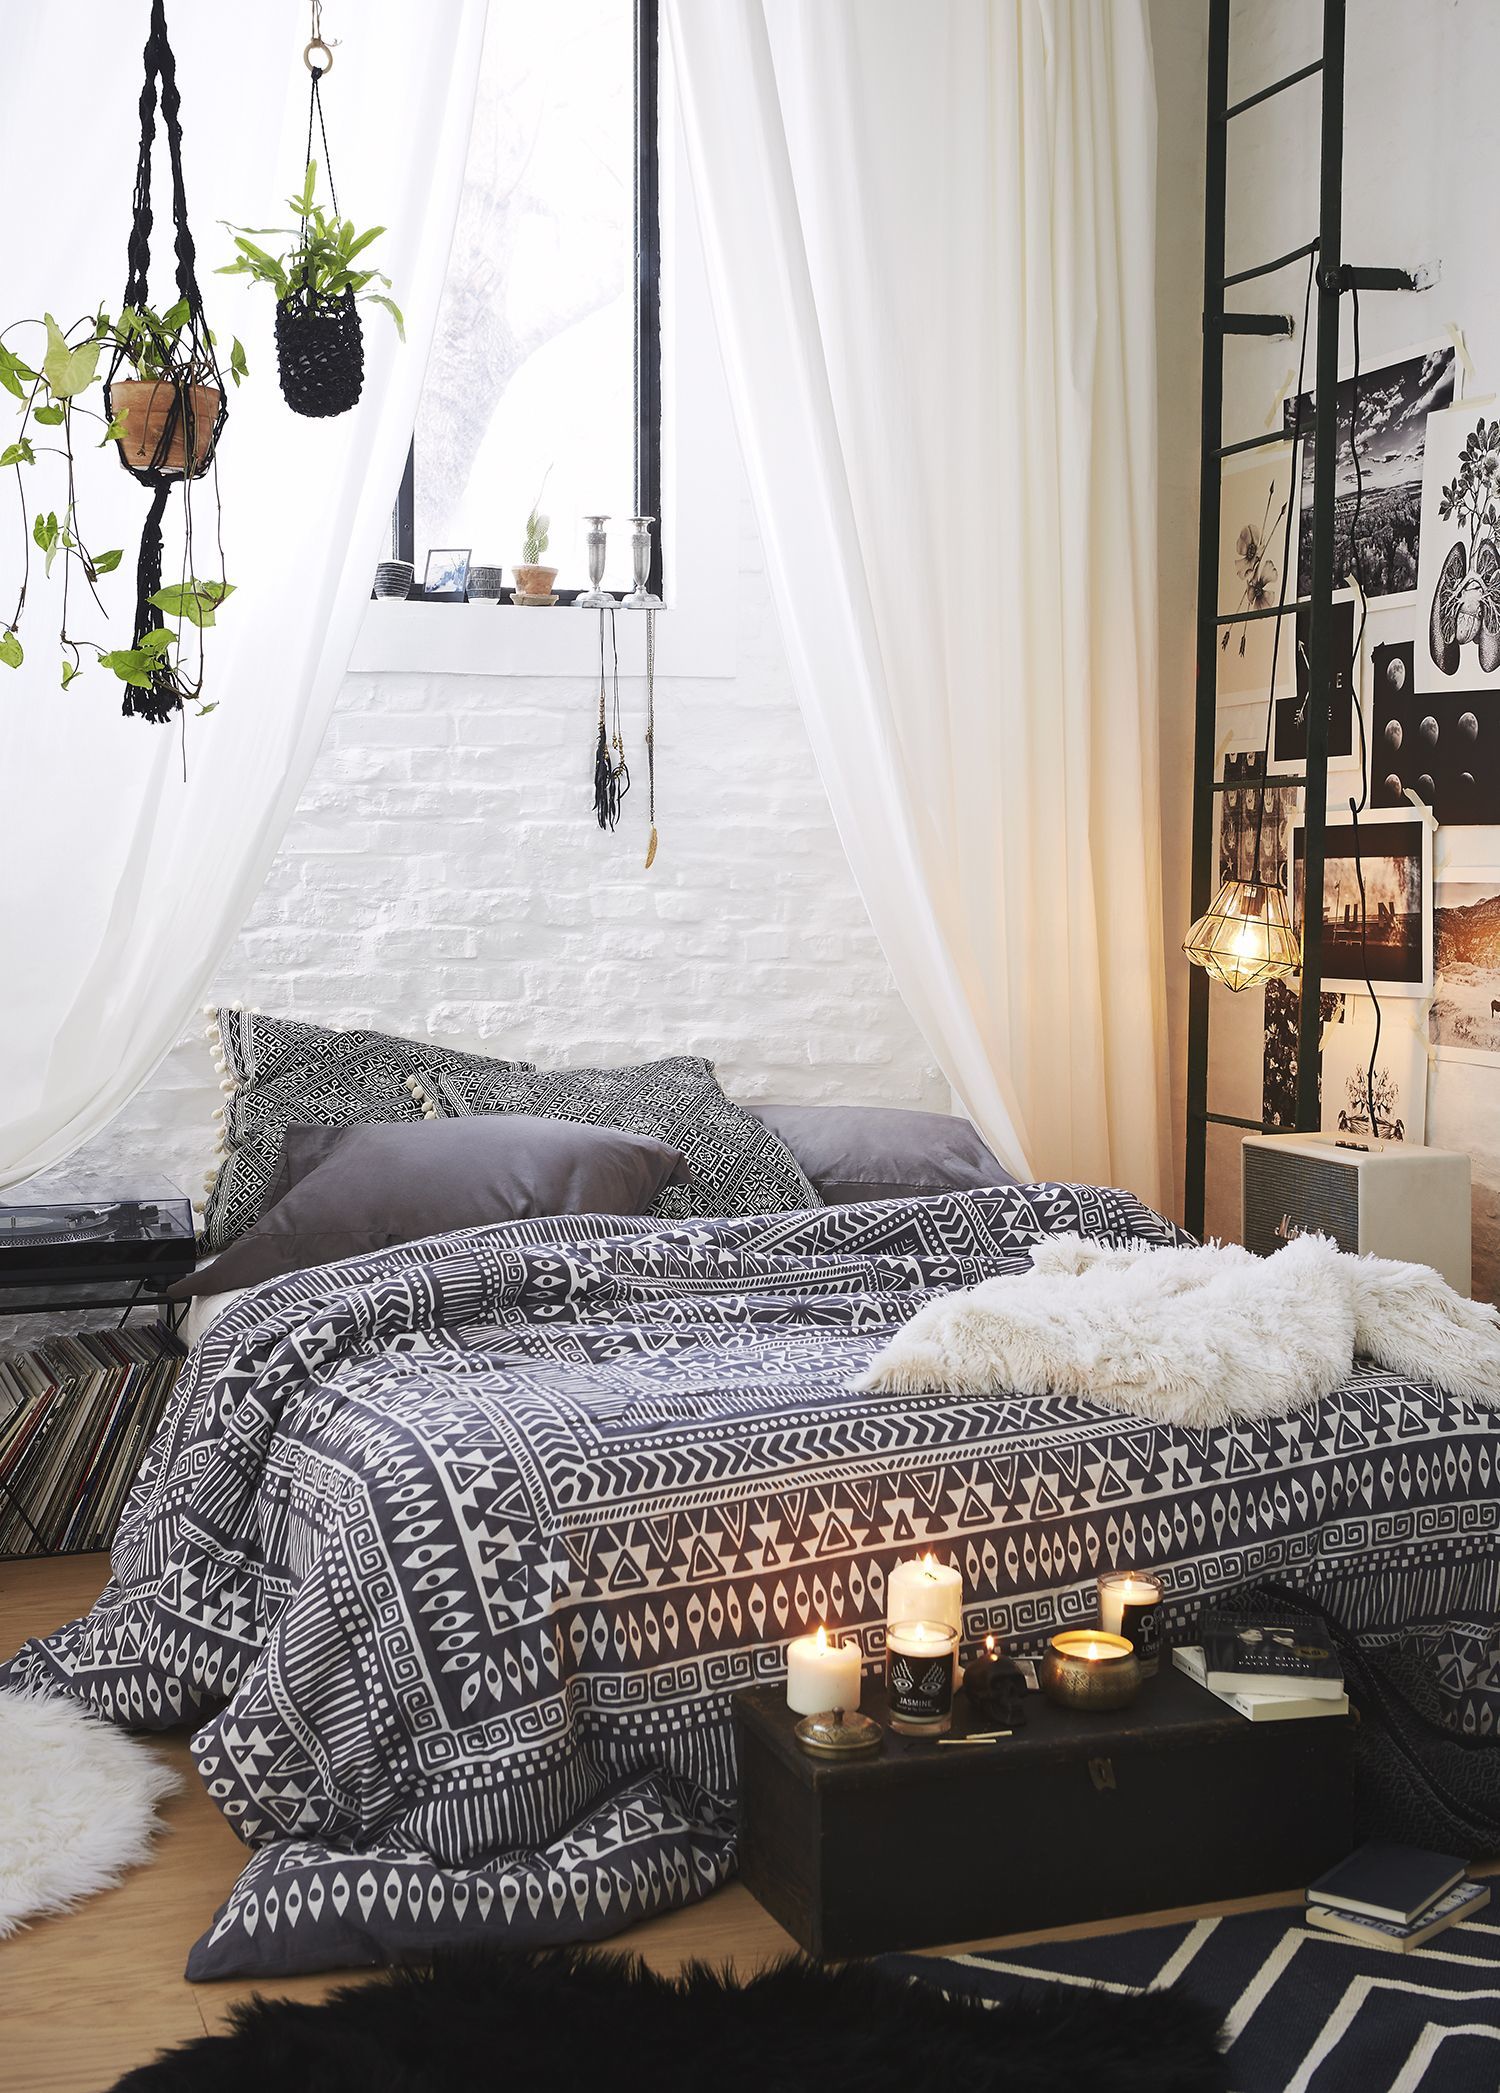 Thiết kế phòng ngủ phong cách Bohemian (Boho) còn dành cho những quý cô yêu sự lãng mạn